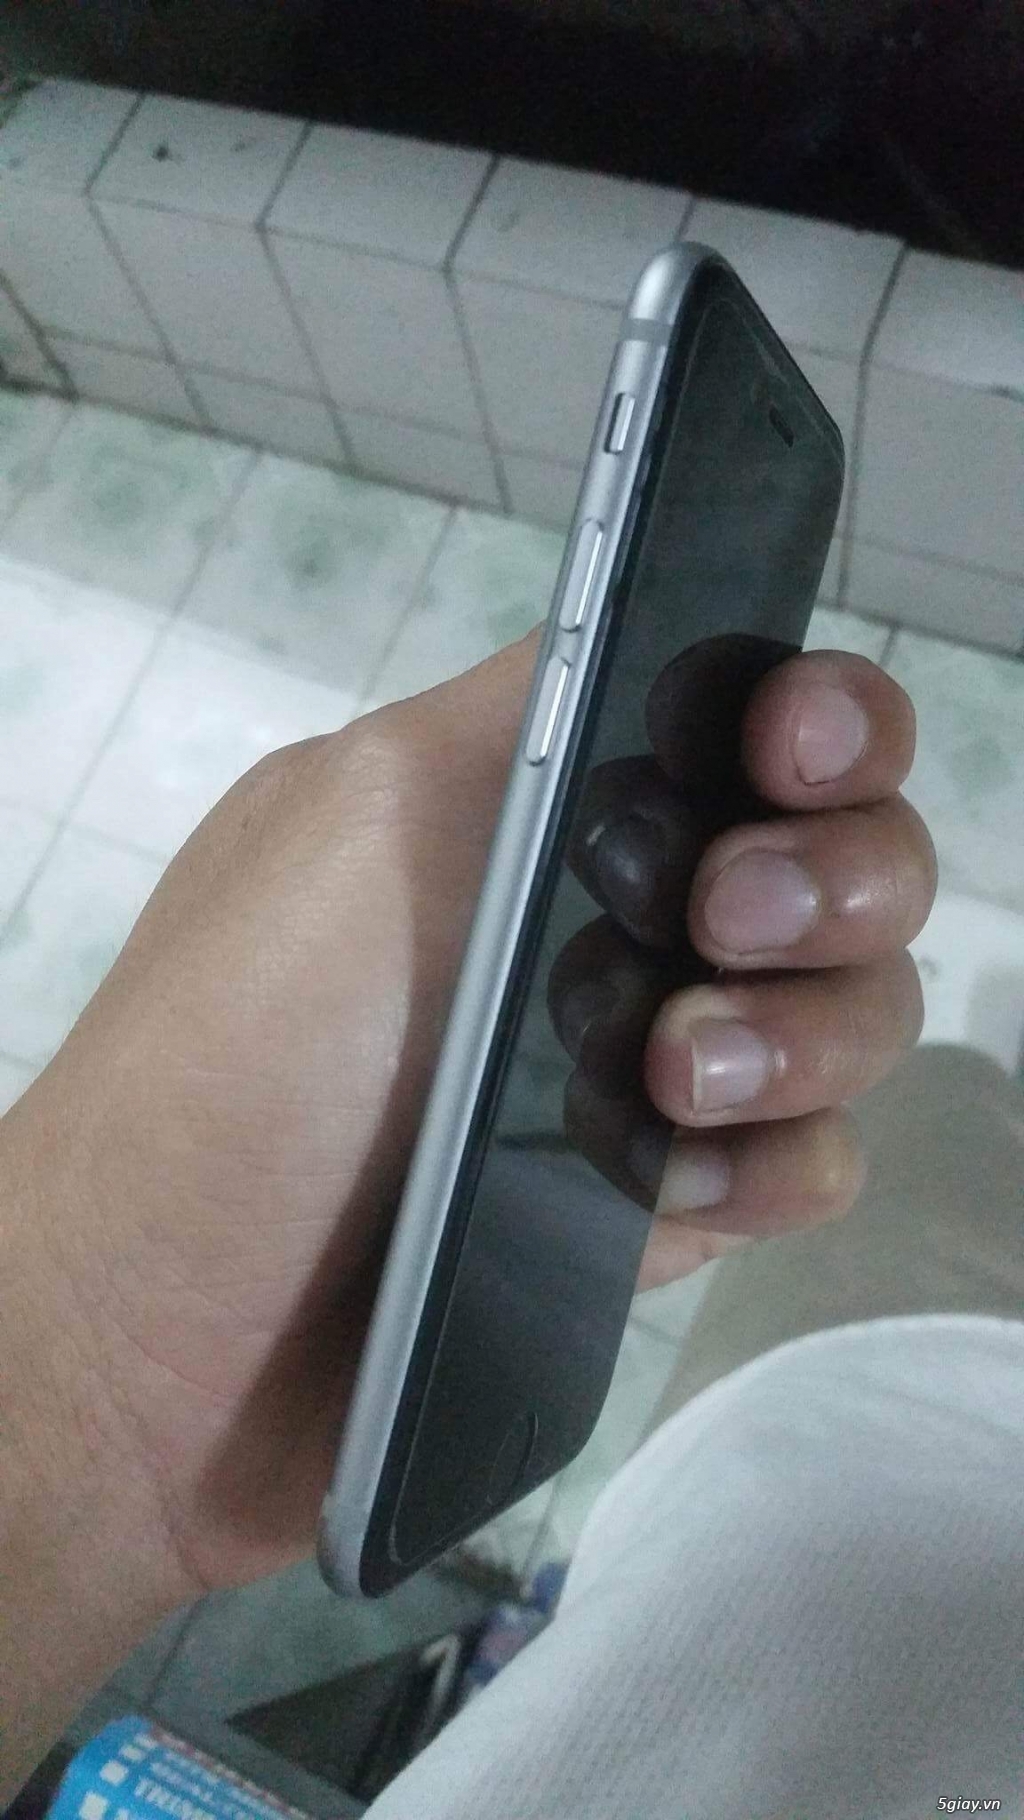 Iphone 6 gray 16G bản Hàn - 2